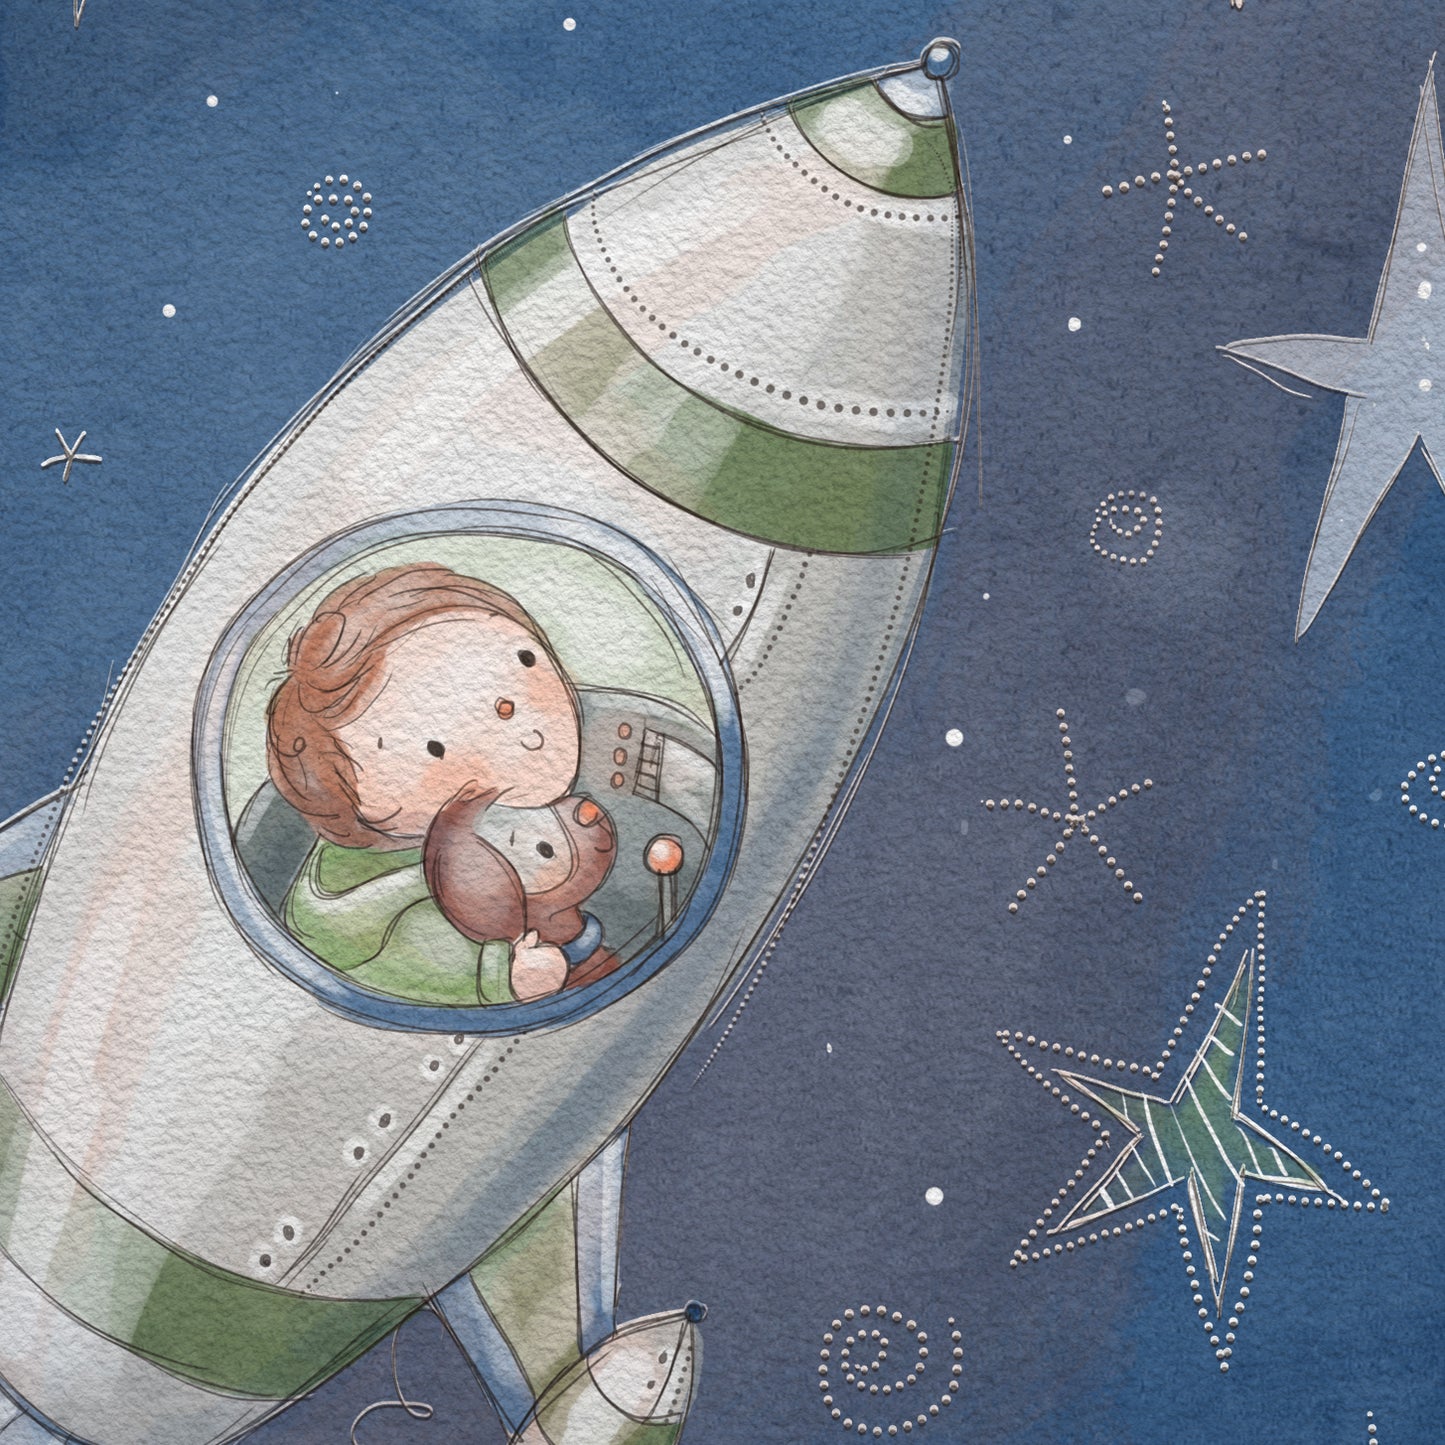 'Space Rocket' Children's Wall Art Print